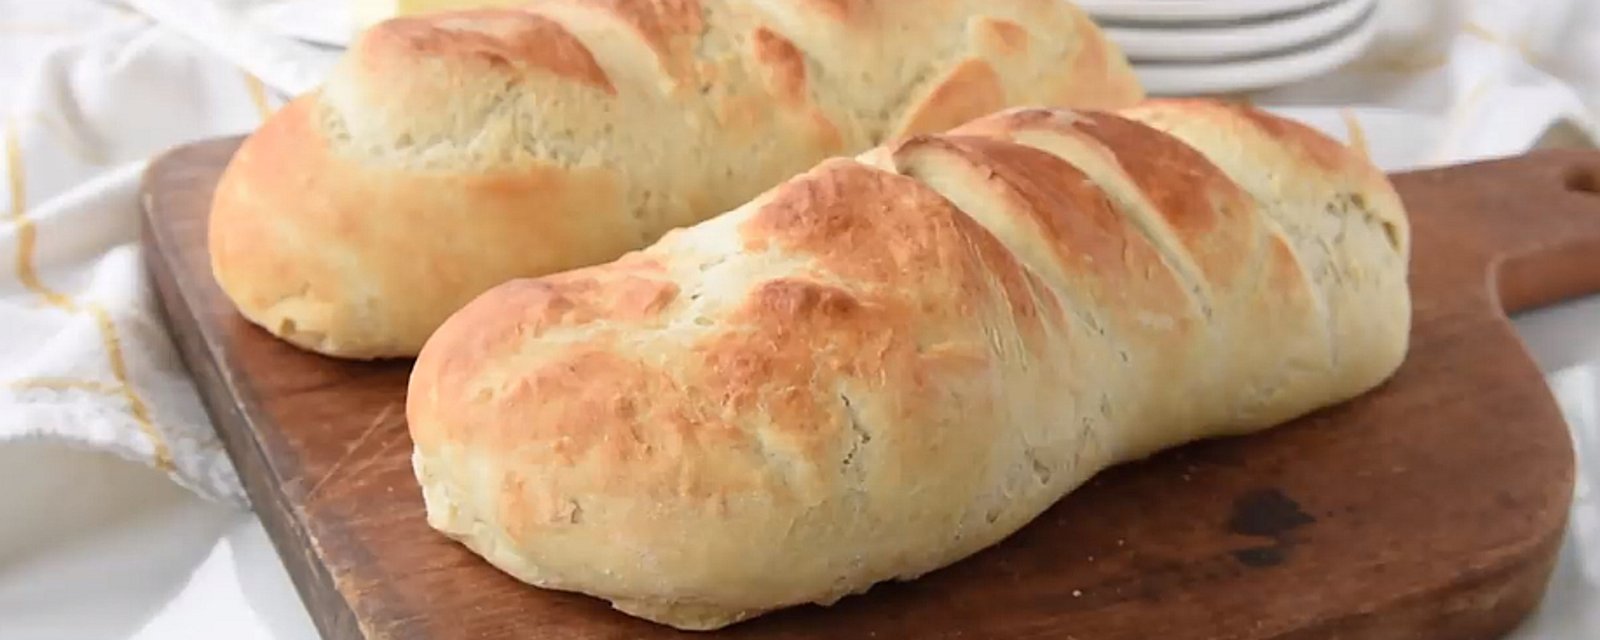 Confectionnez un pain français facilement et sans machine à pain